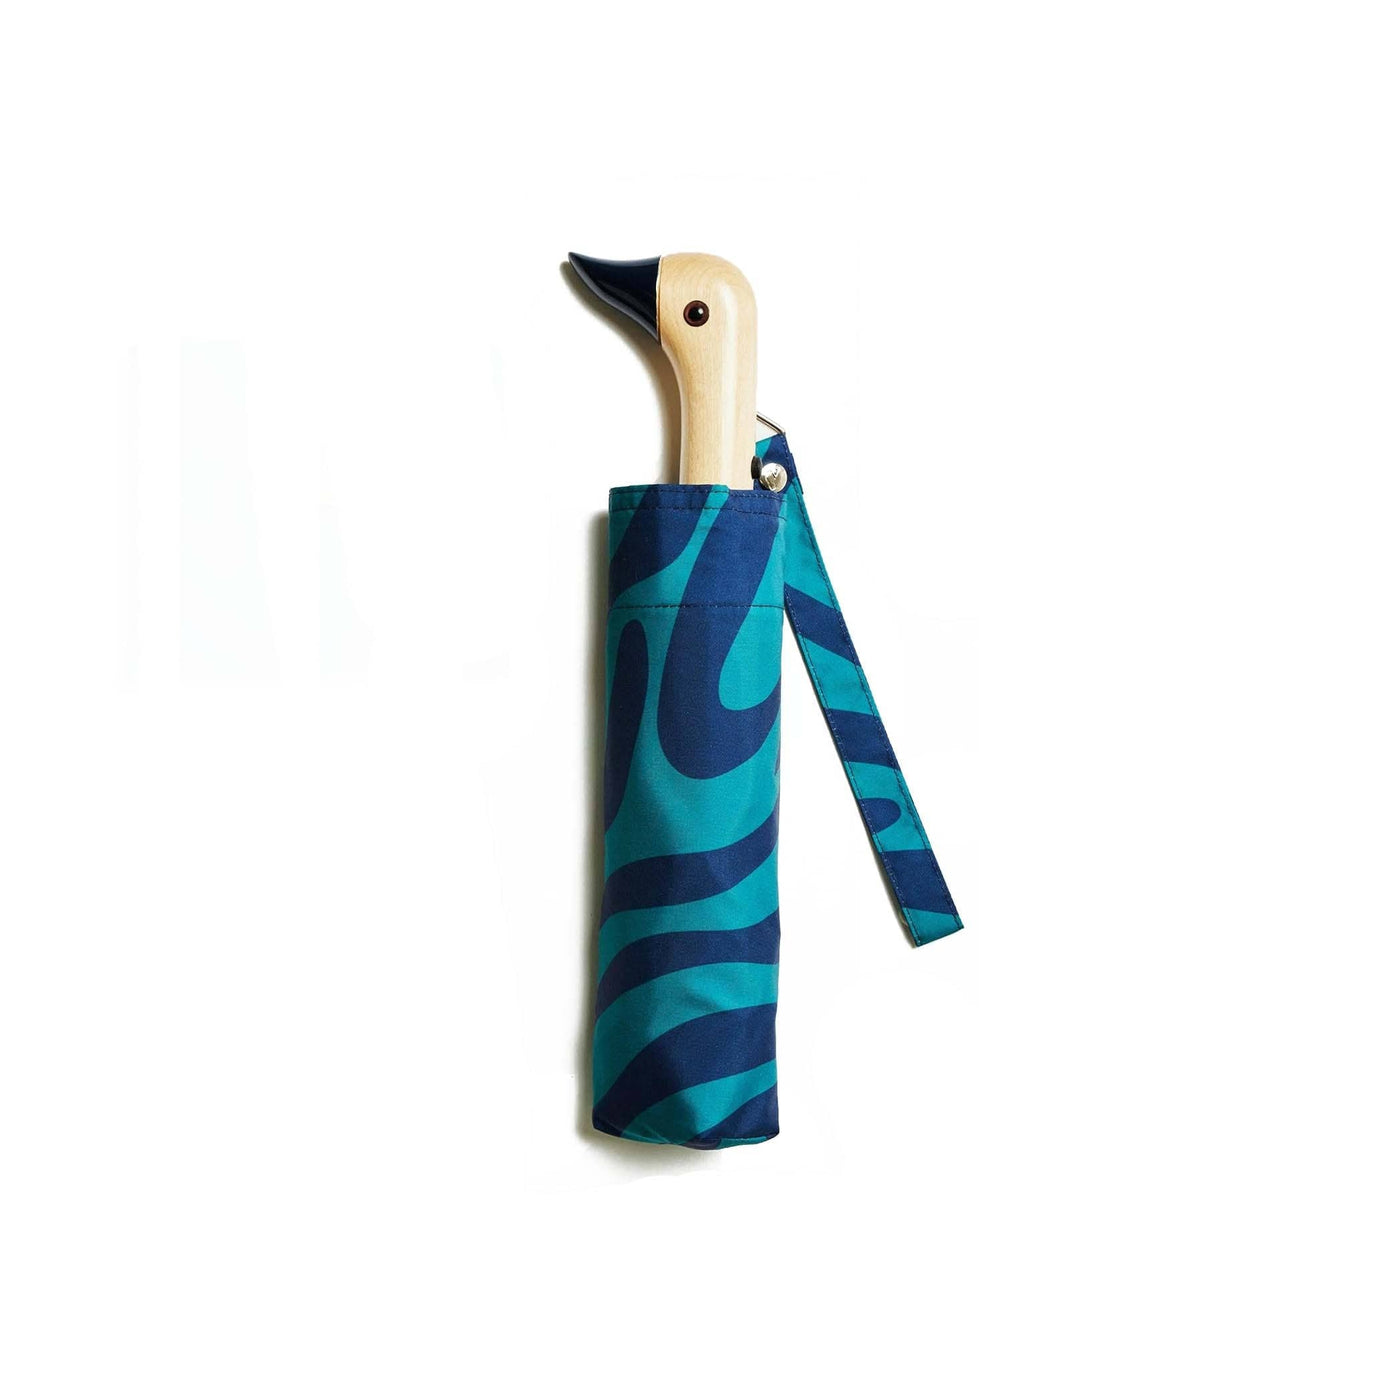 Affrontez les intempéries avec style et éthique grâce au parapluie Canard Original Duckhead, fabriqué à partir de plastique recyclé. Motifs Blue Swirls